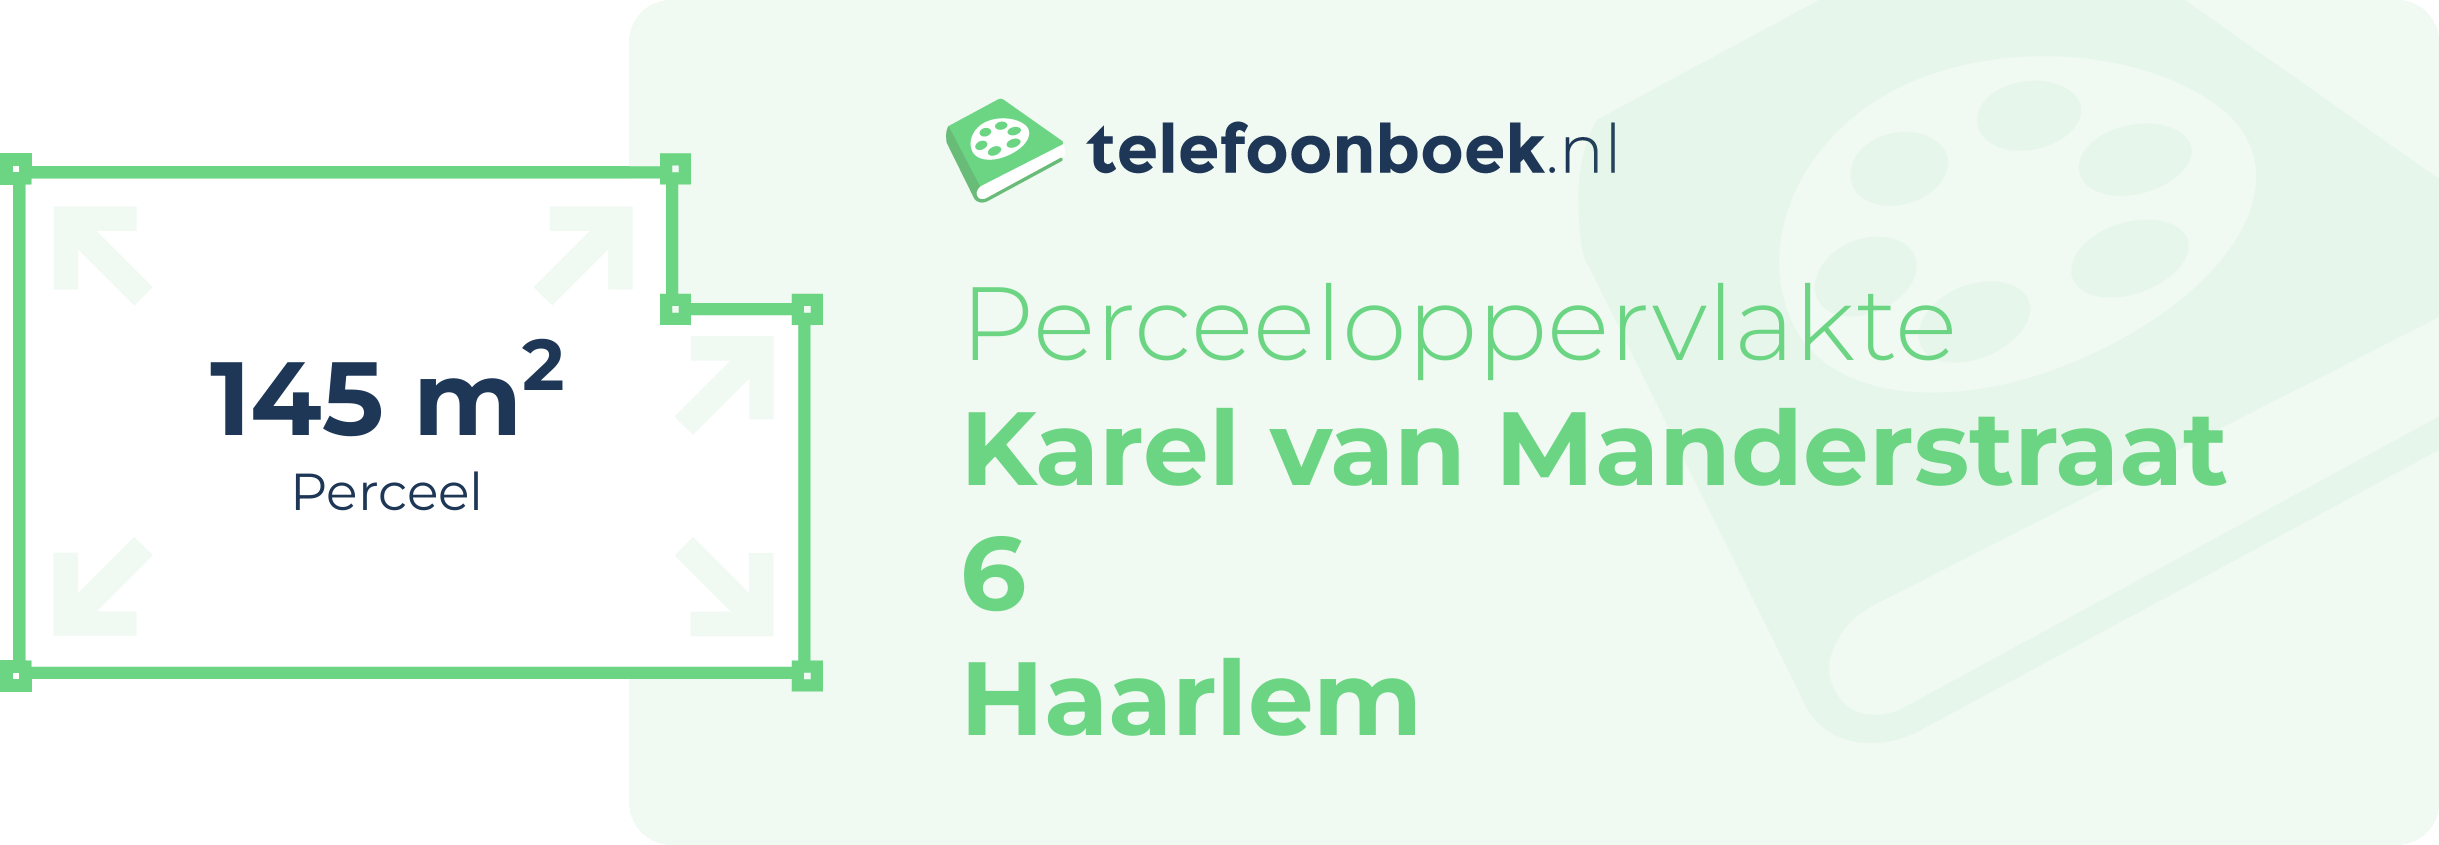 Perceeloppervlakte Karel Van Manderstraat 6 Haarlem